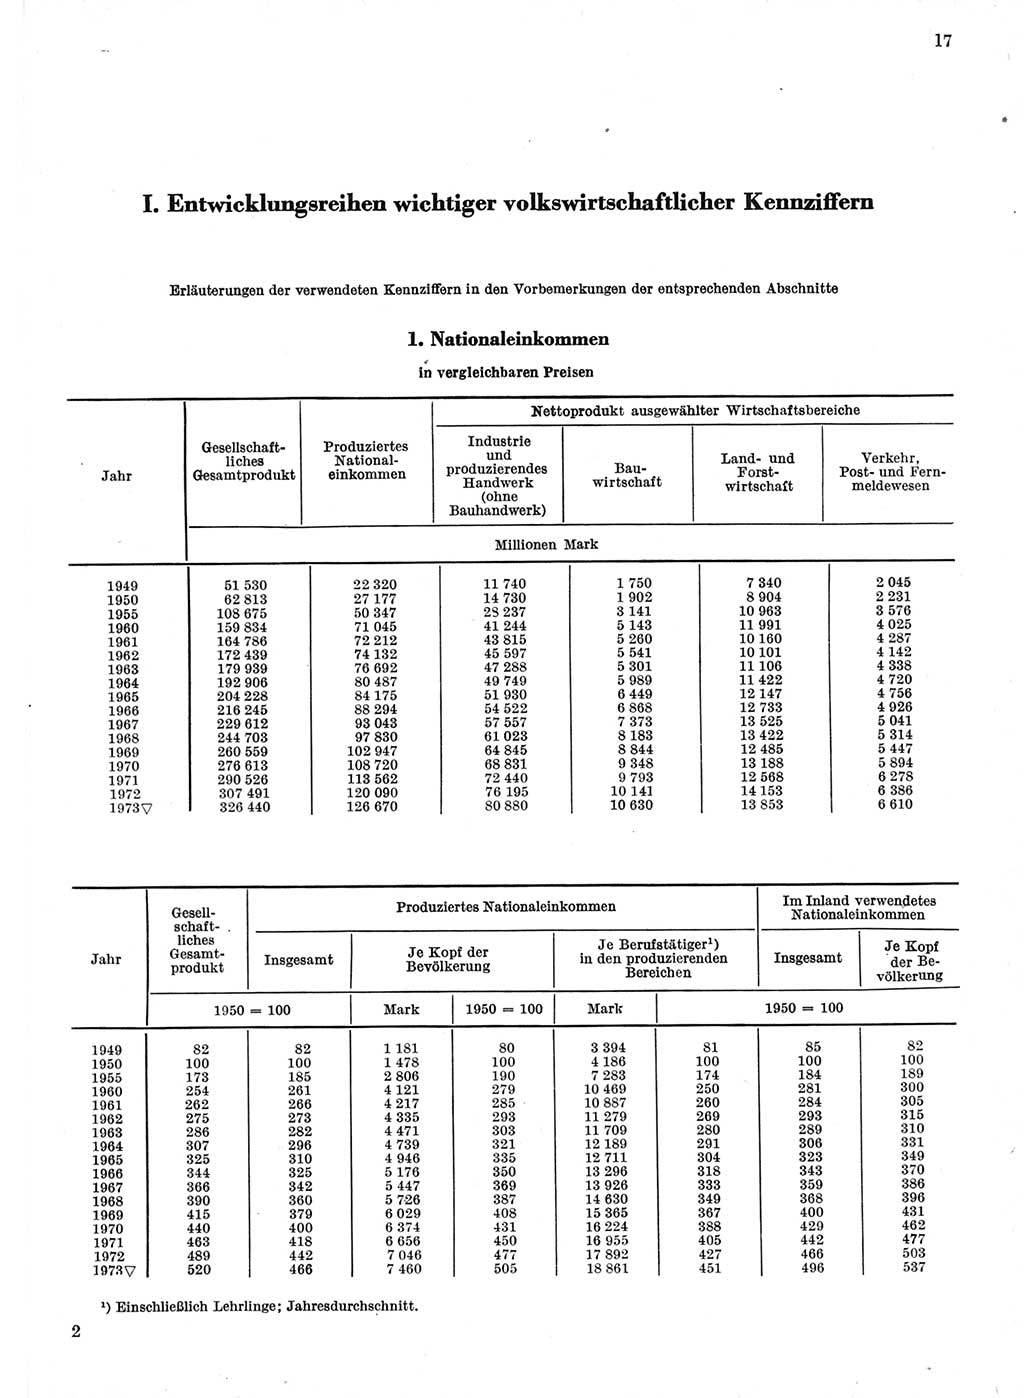 Statistisches Jahrbuch der Deutschen Demokratischen Republik (DDR) 1974, Seite 17 (Stat. Jb. DDR 1974, S. 17)